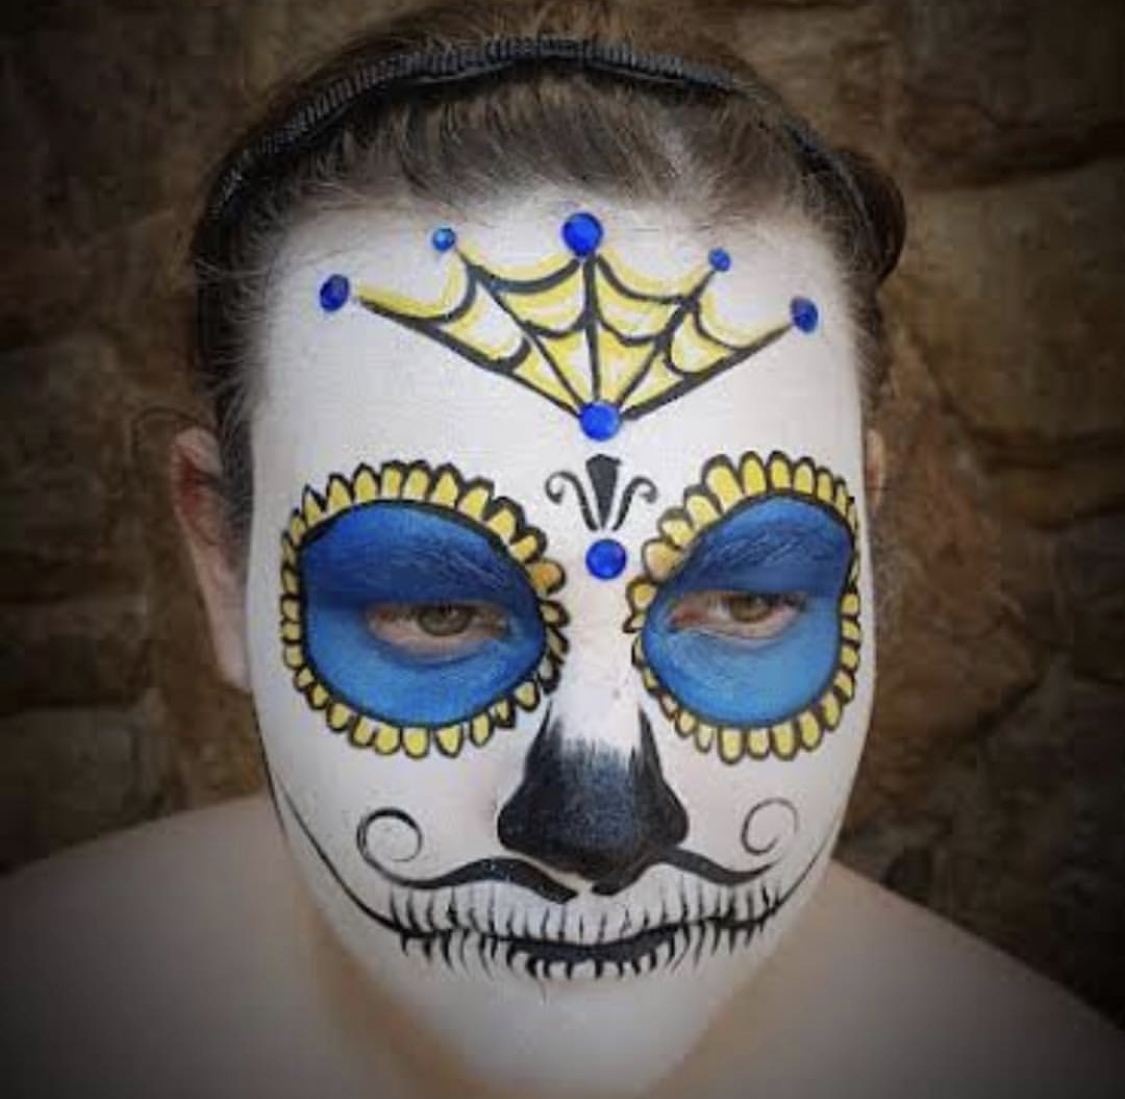 Maquiagem de Caveira Mexicana